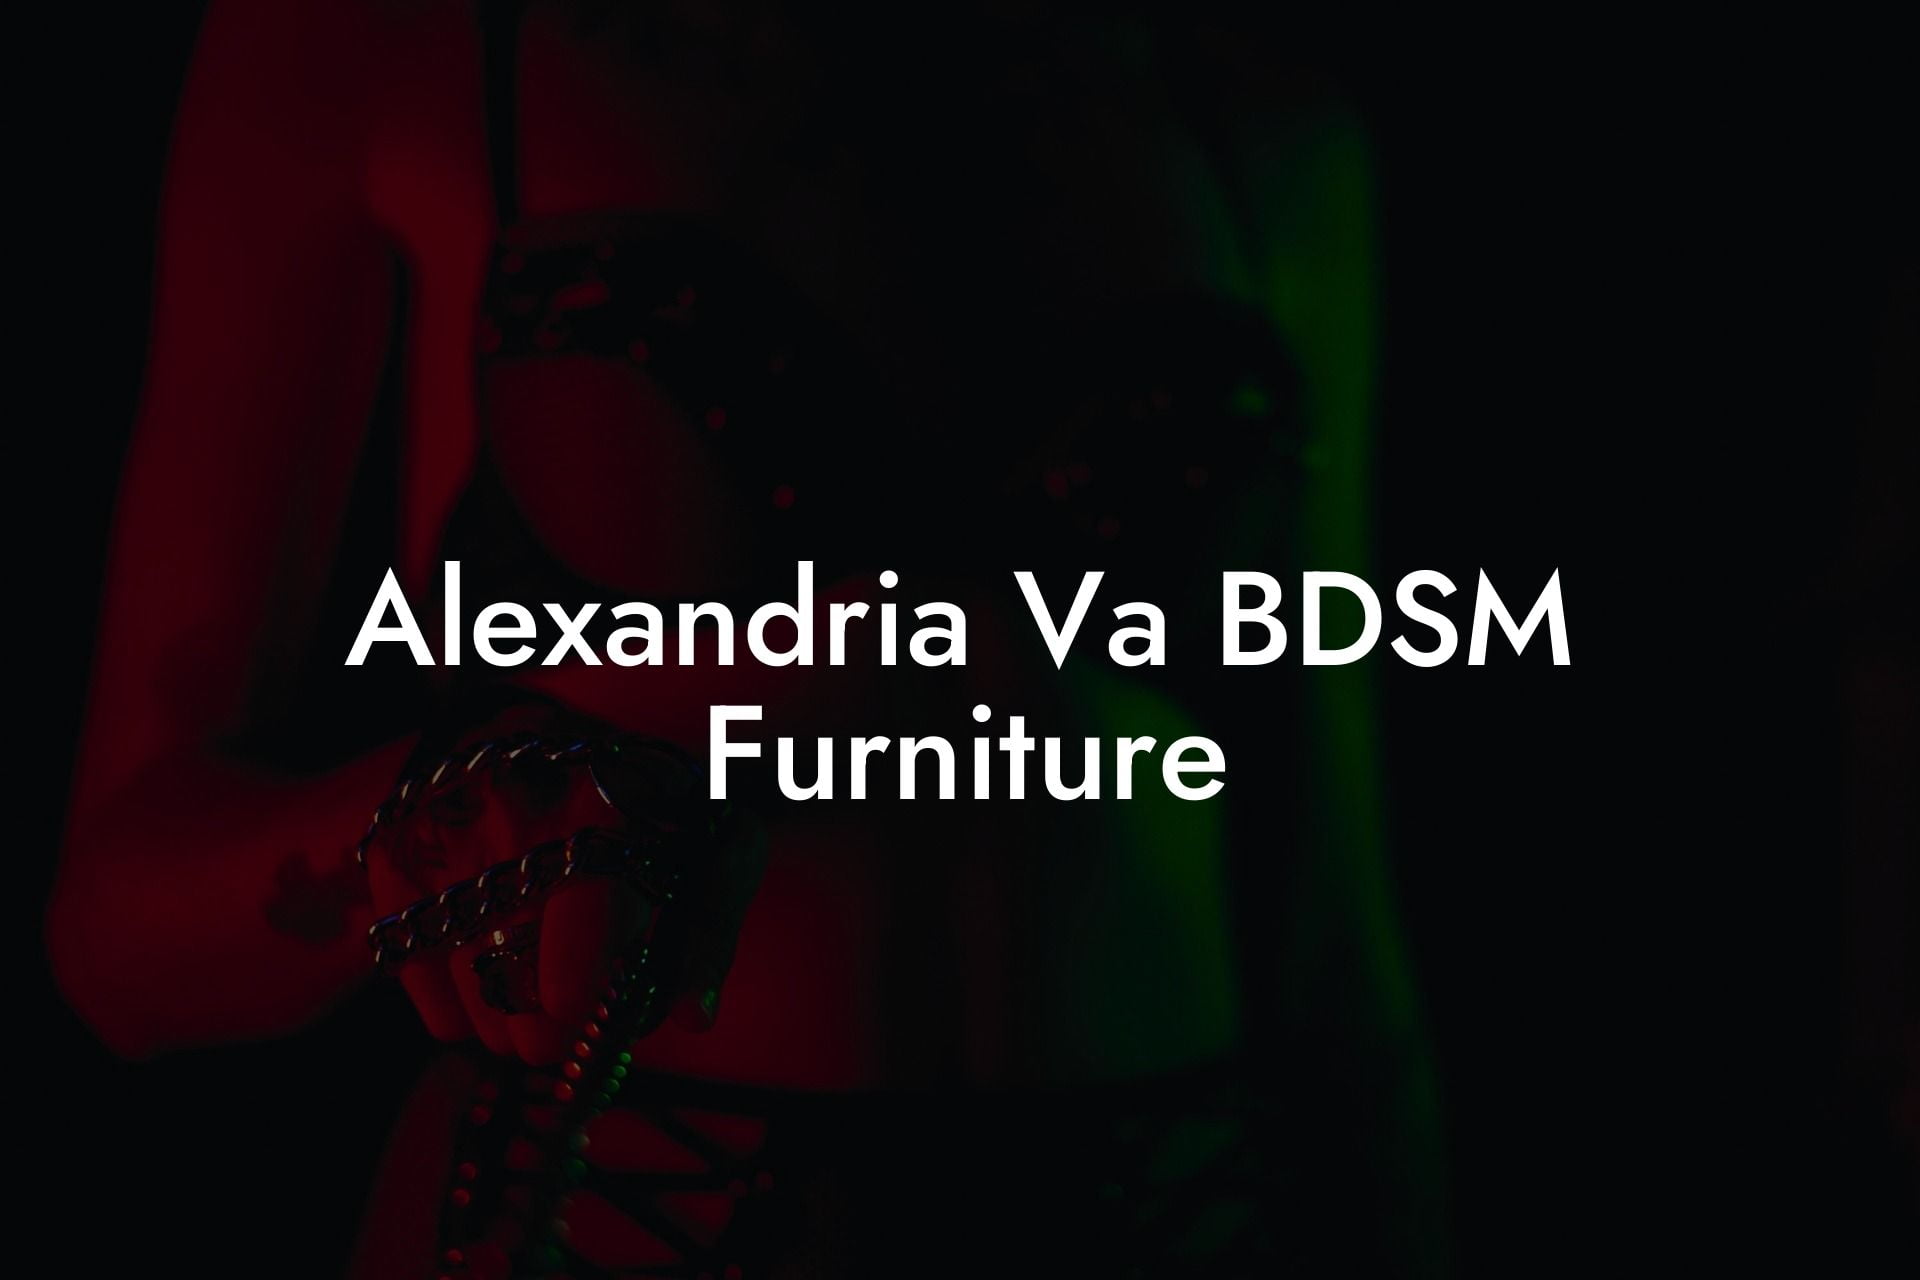 Alexandria Va BDSM Furniture